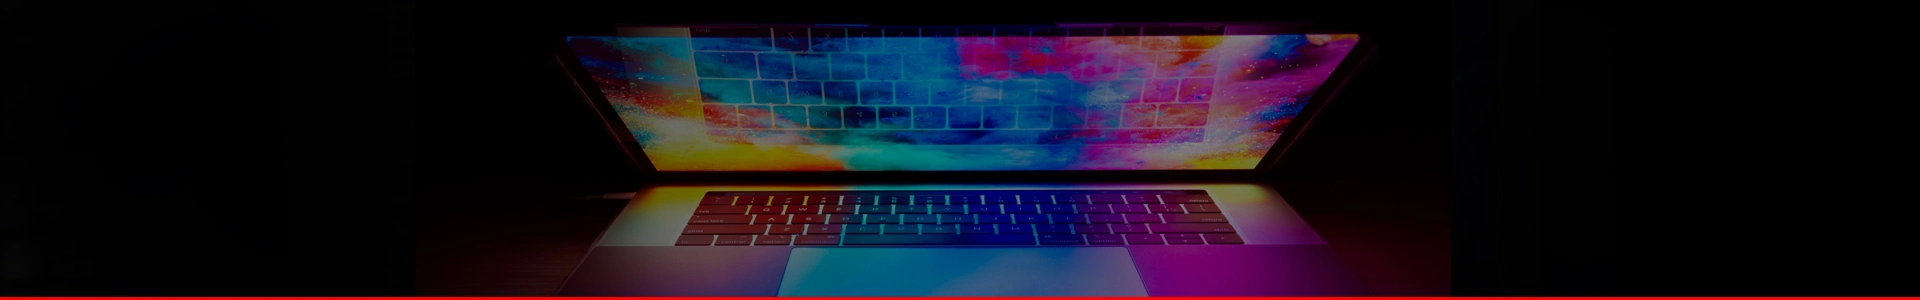 Polu otvoren laptop na mračnoj pozadini sa šarenom slikom na ekranu